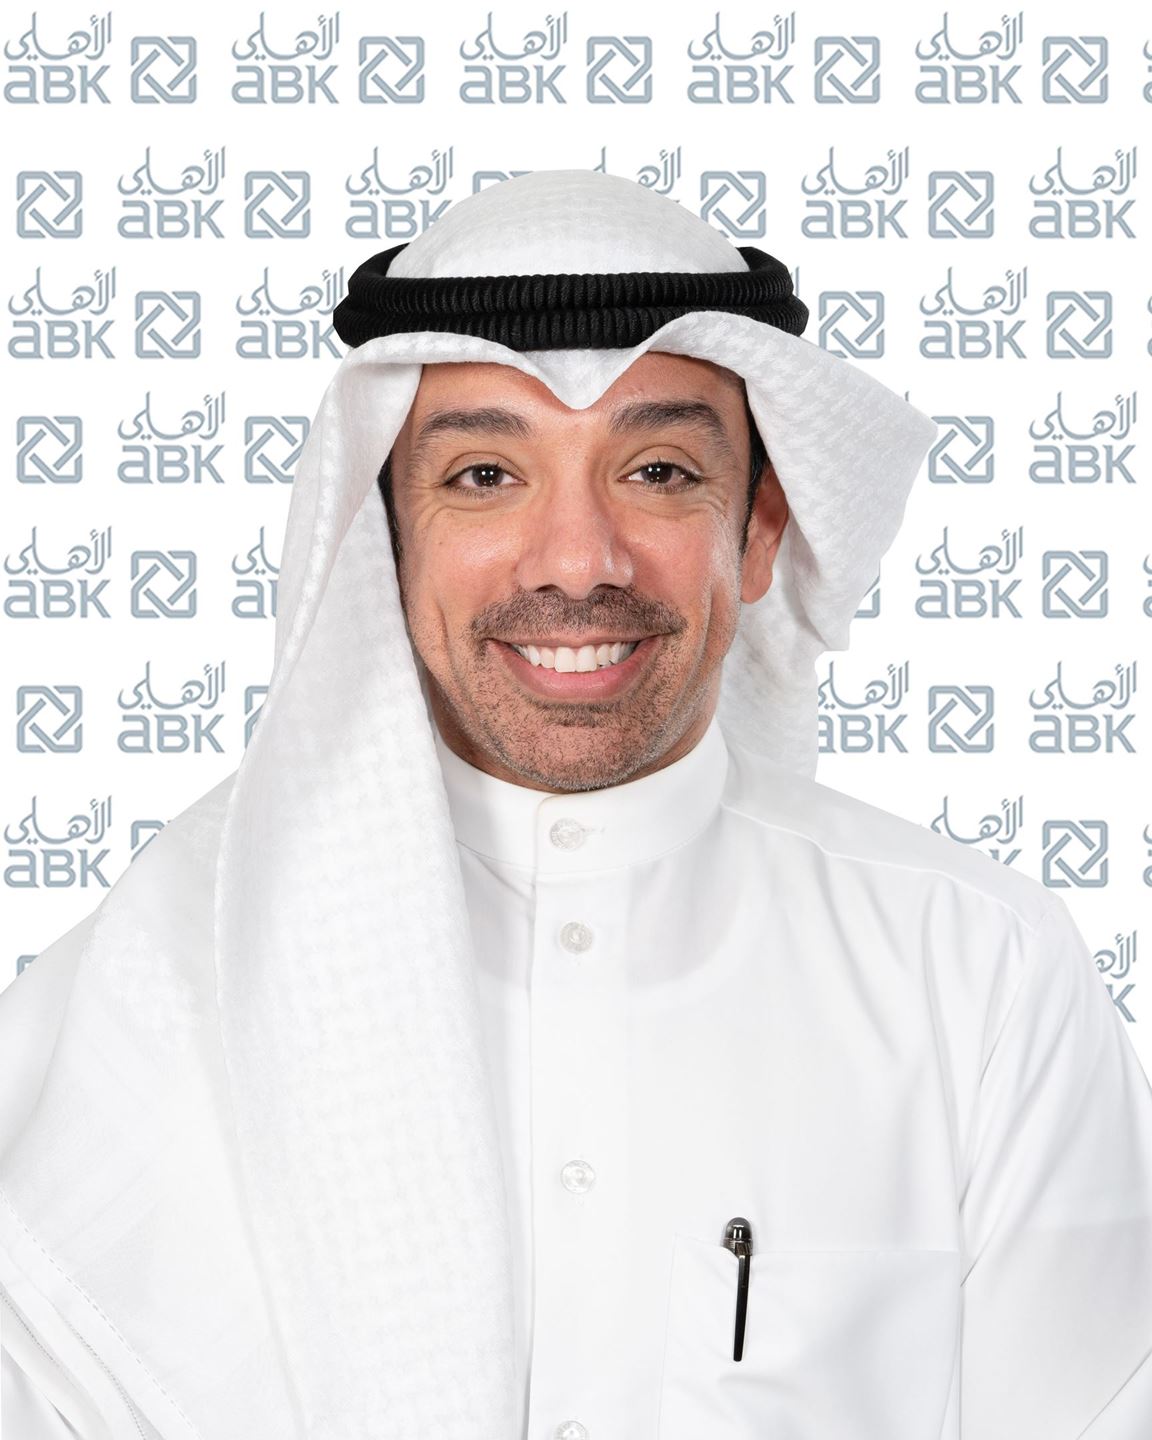 السيد/ صقر ال بن علي رئيس وحدة الإتصالات والعلاقات الخارجية بالإنابة في البنك الأهلي الكويتي